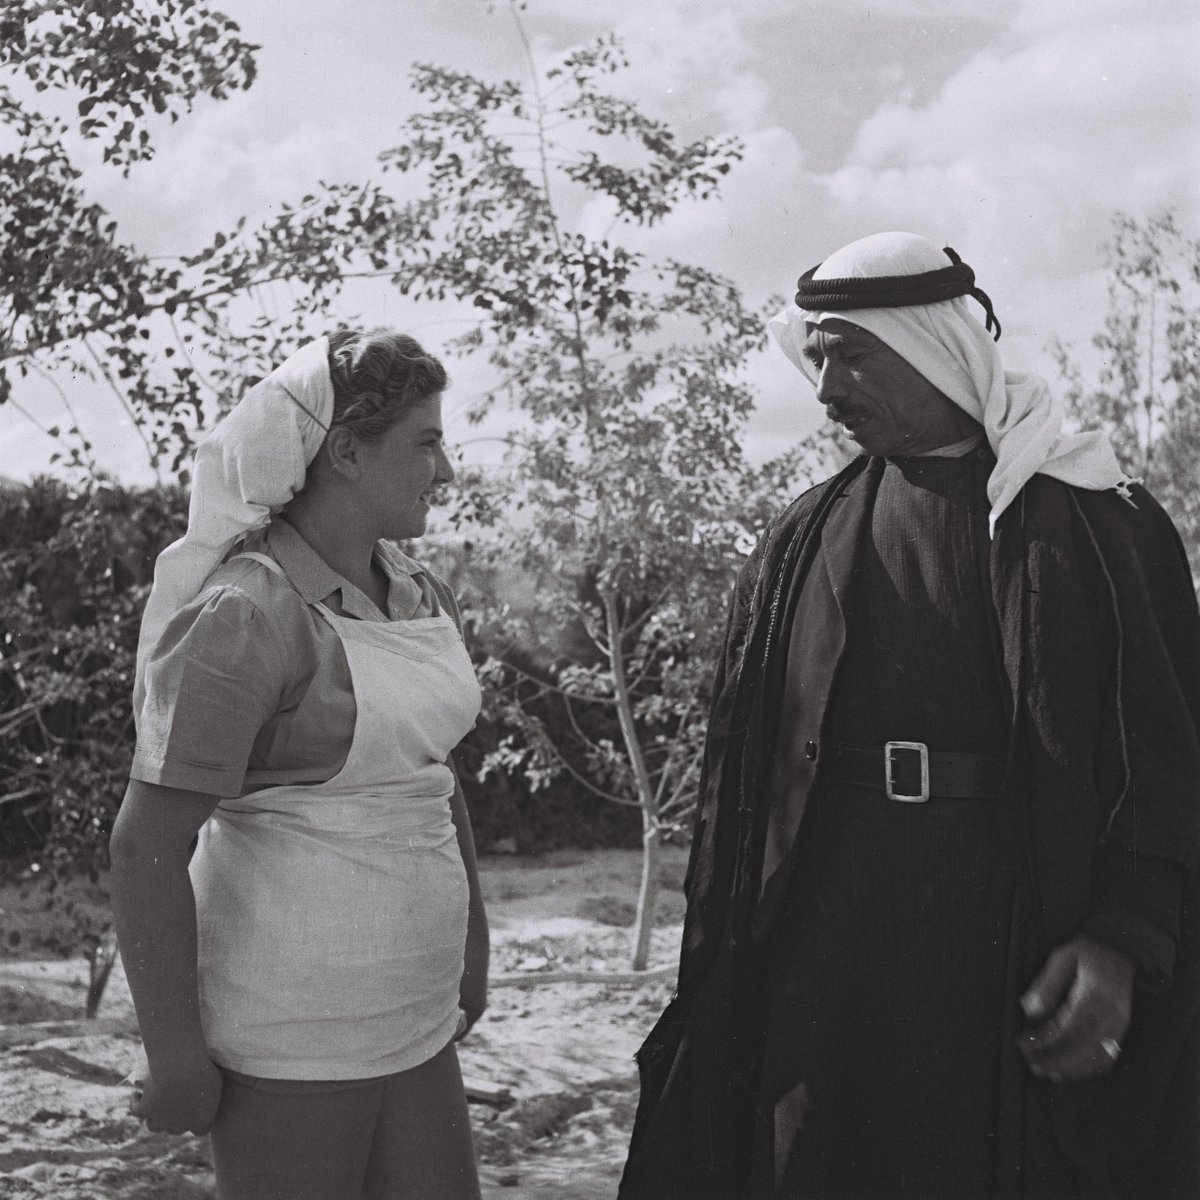 صورة من القرية التعاونية (كيبوتس) مشمار هنيغف عام 1947 ترصد حديثًا وديًا بين امرأة يهودية ورجل عربي يزور…